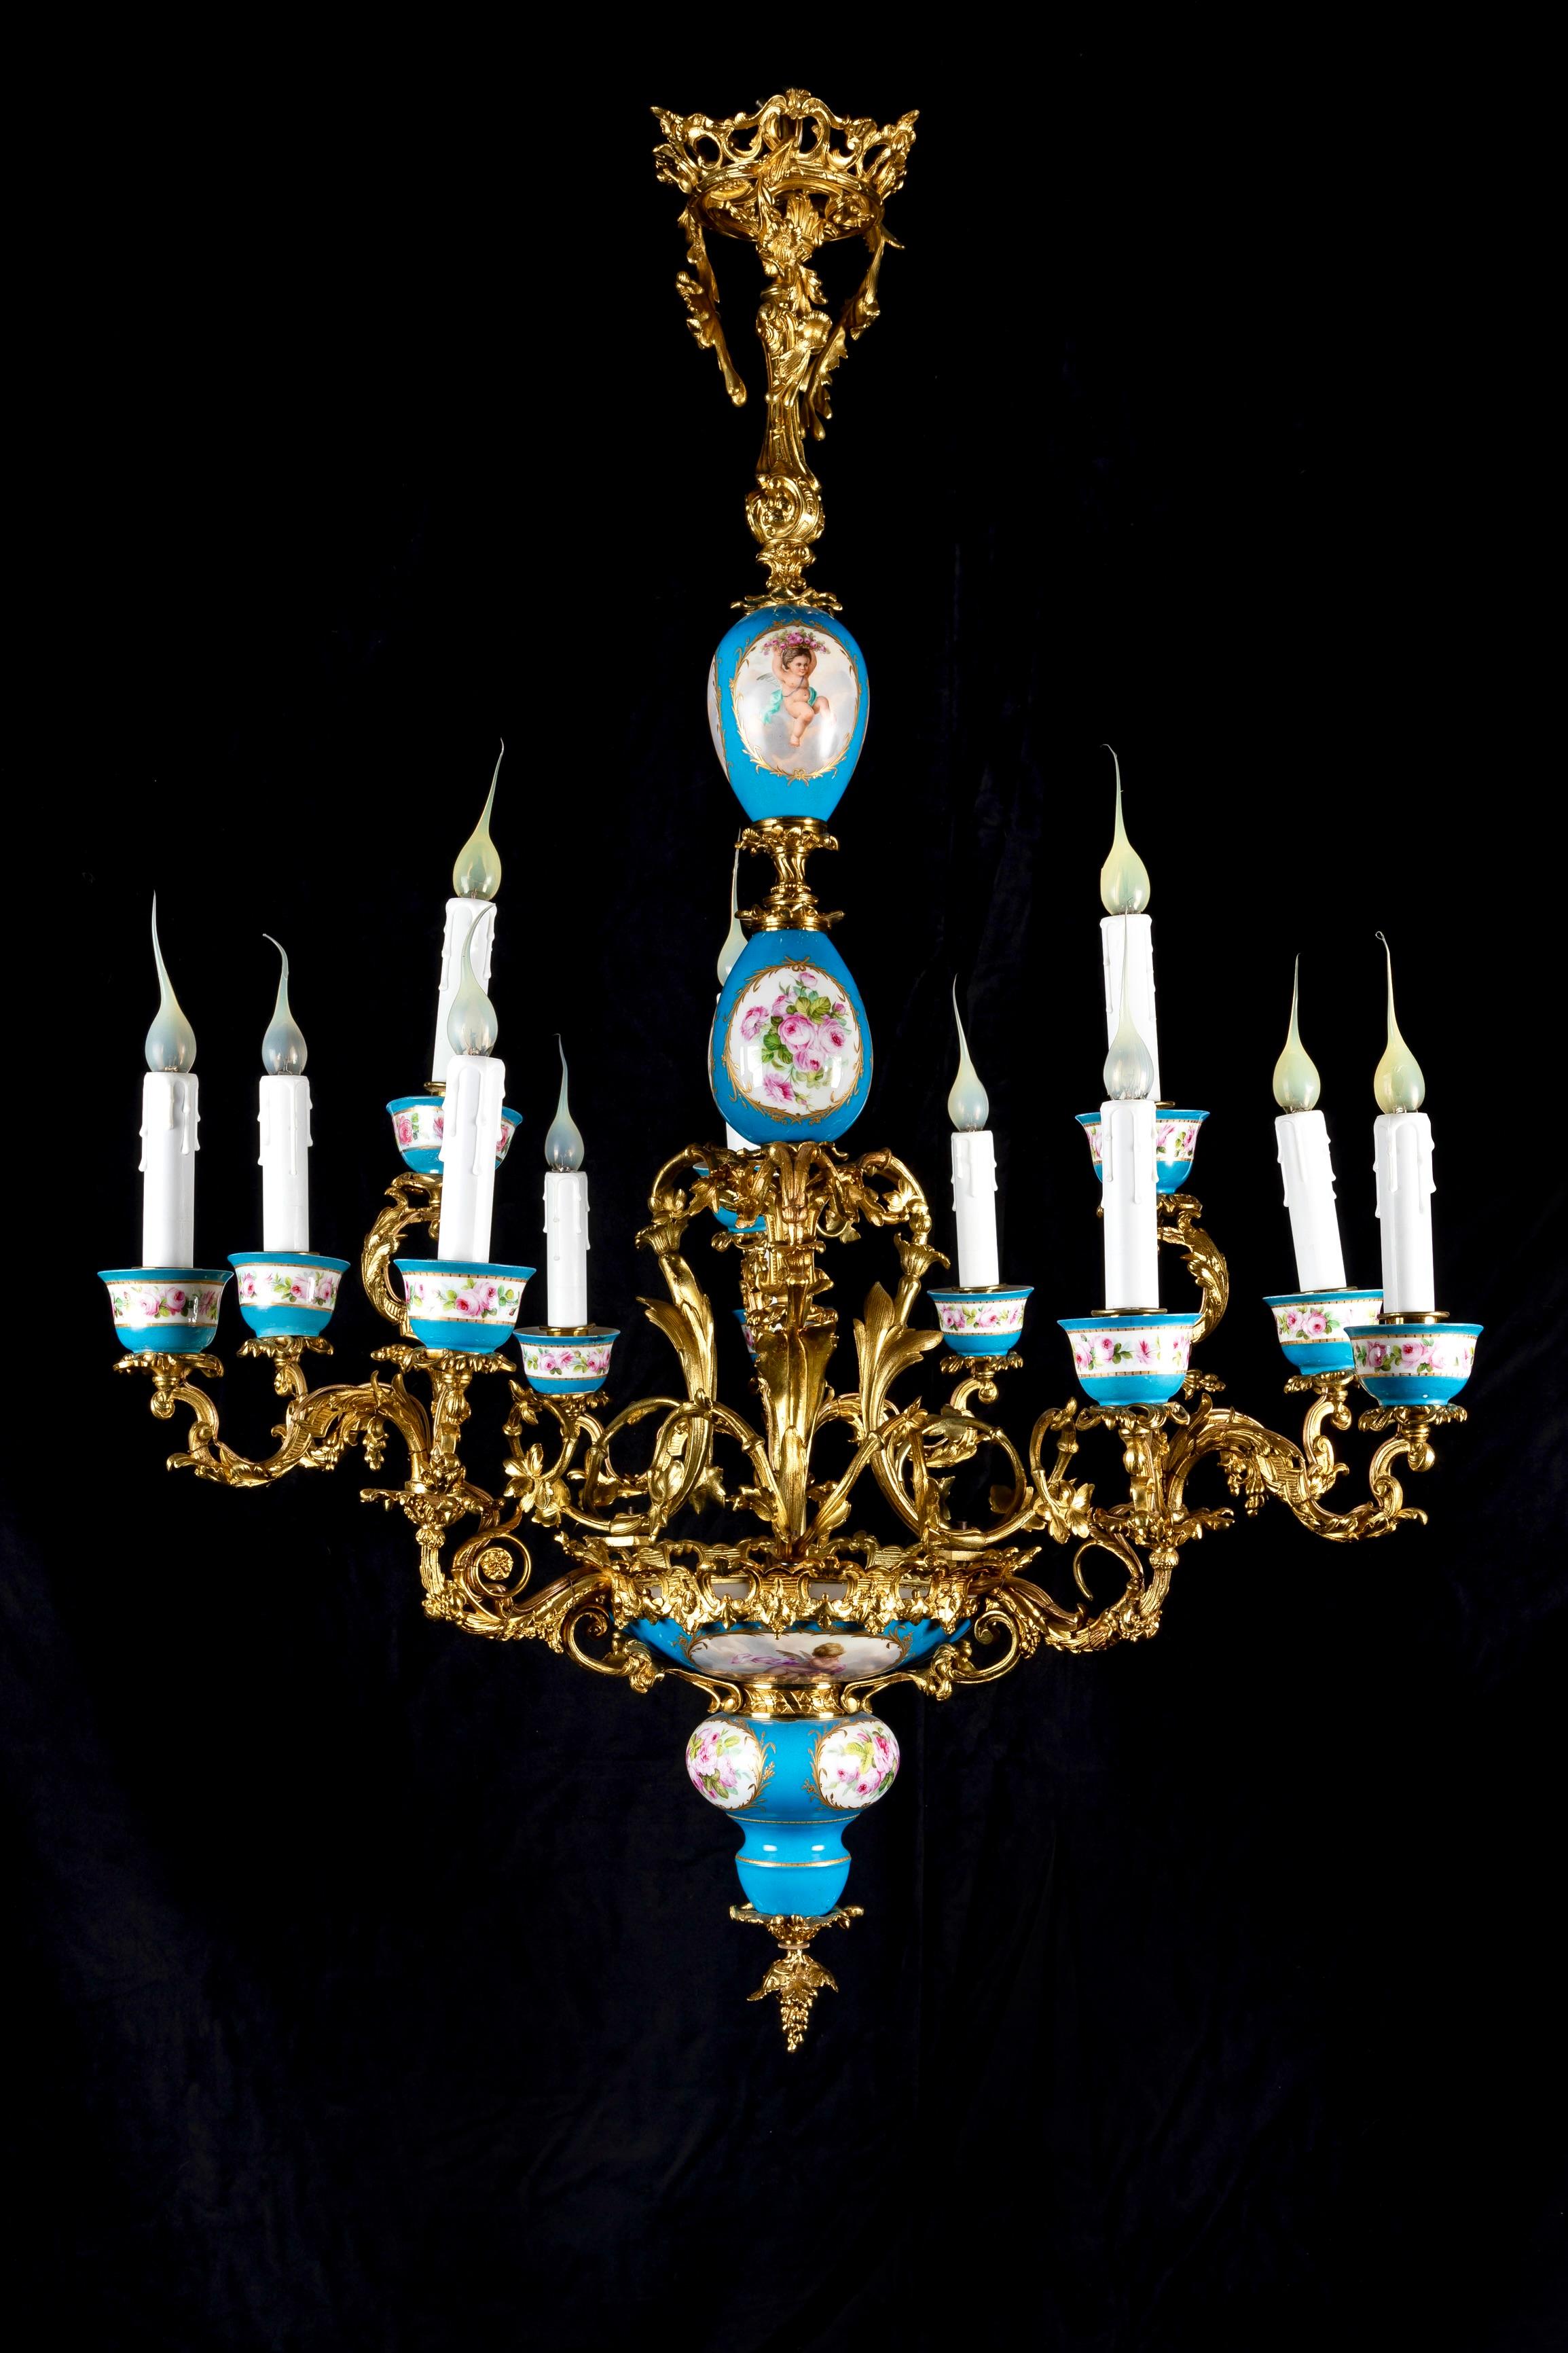 Eine spektakuläre große 19. Jahrhundert blau Sèvres Porzellan und vergoldeter Bronze Multi Arm doppelstöckigen Kronleuchter von exquisiter Handwerkskunst. Der Hauptteil dieses einzigartigen Kronleuchters aus blauem Sèvres-Porzellan zeigt 12 ovale